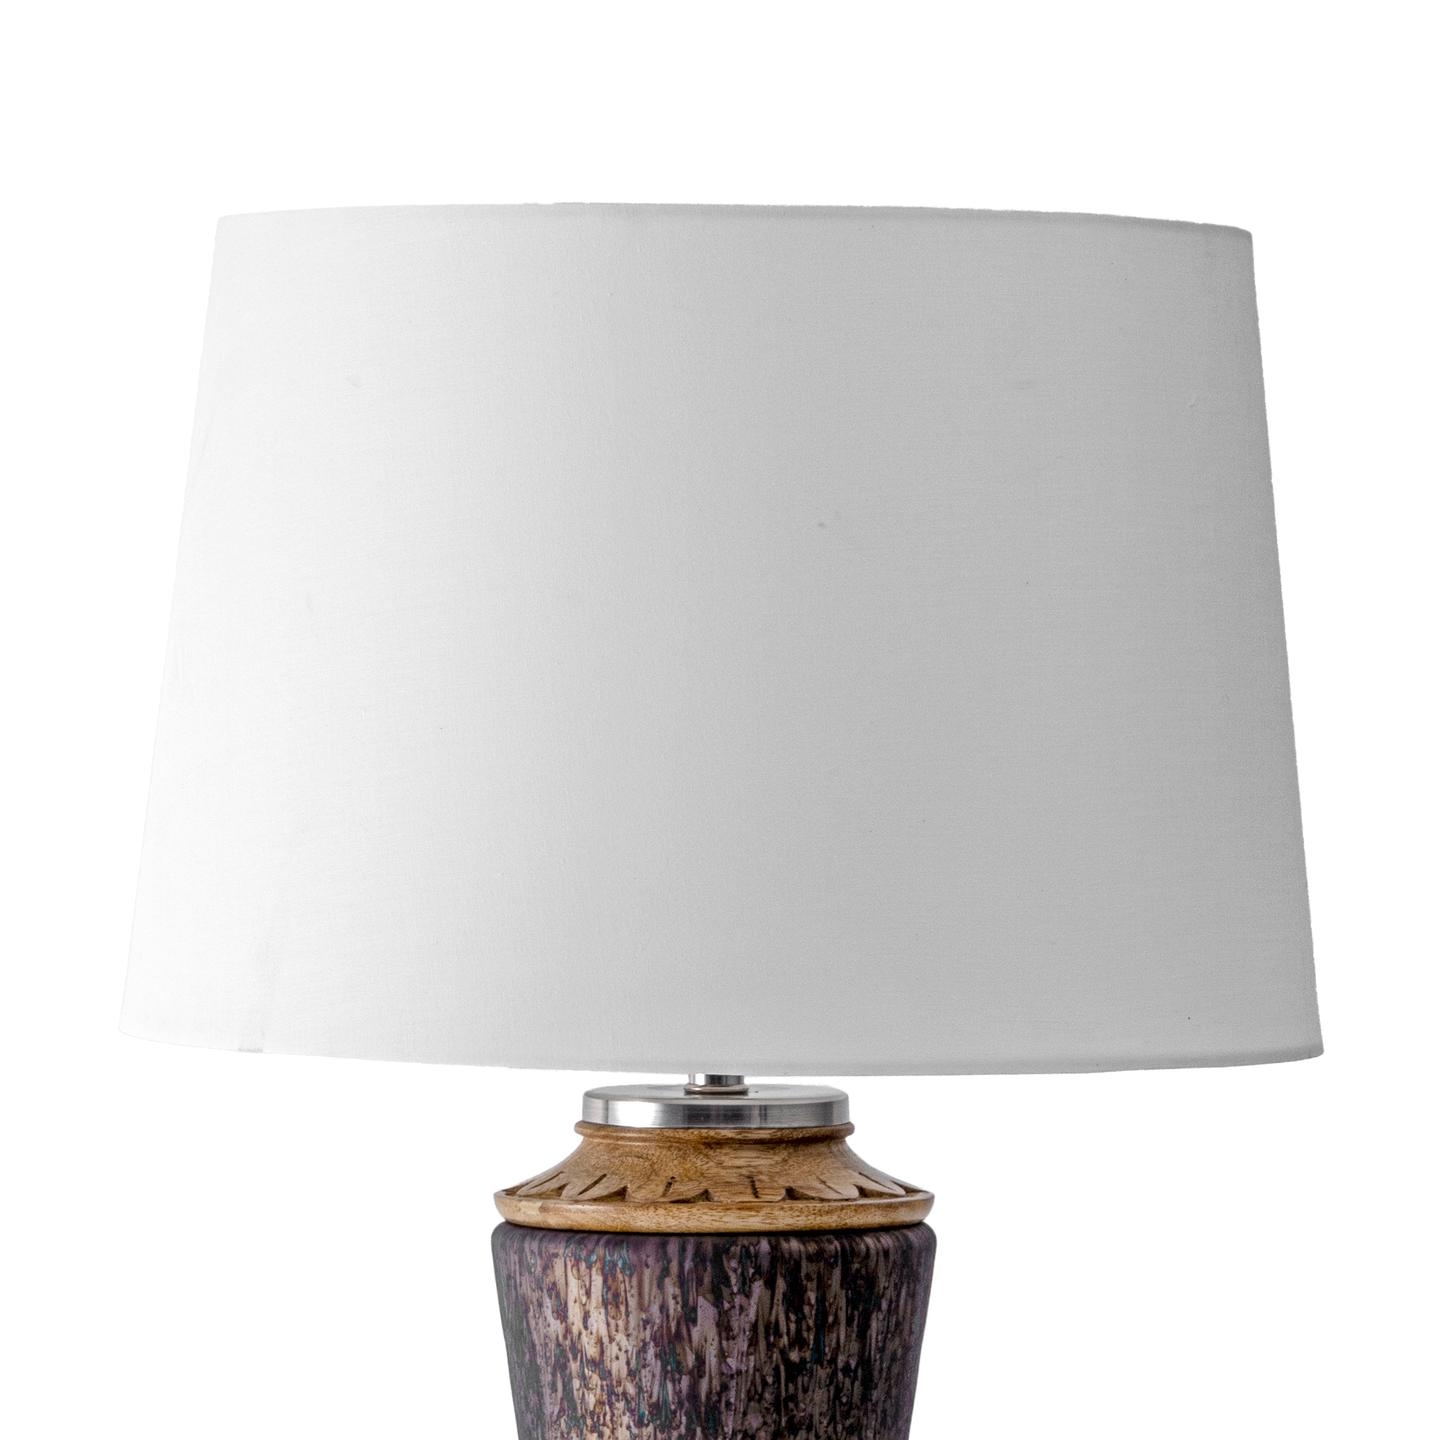 Novato 25" Wood Table Lamp - Image 4